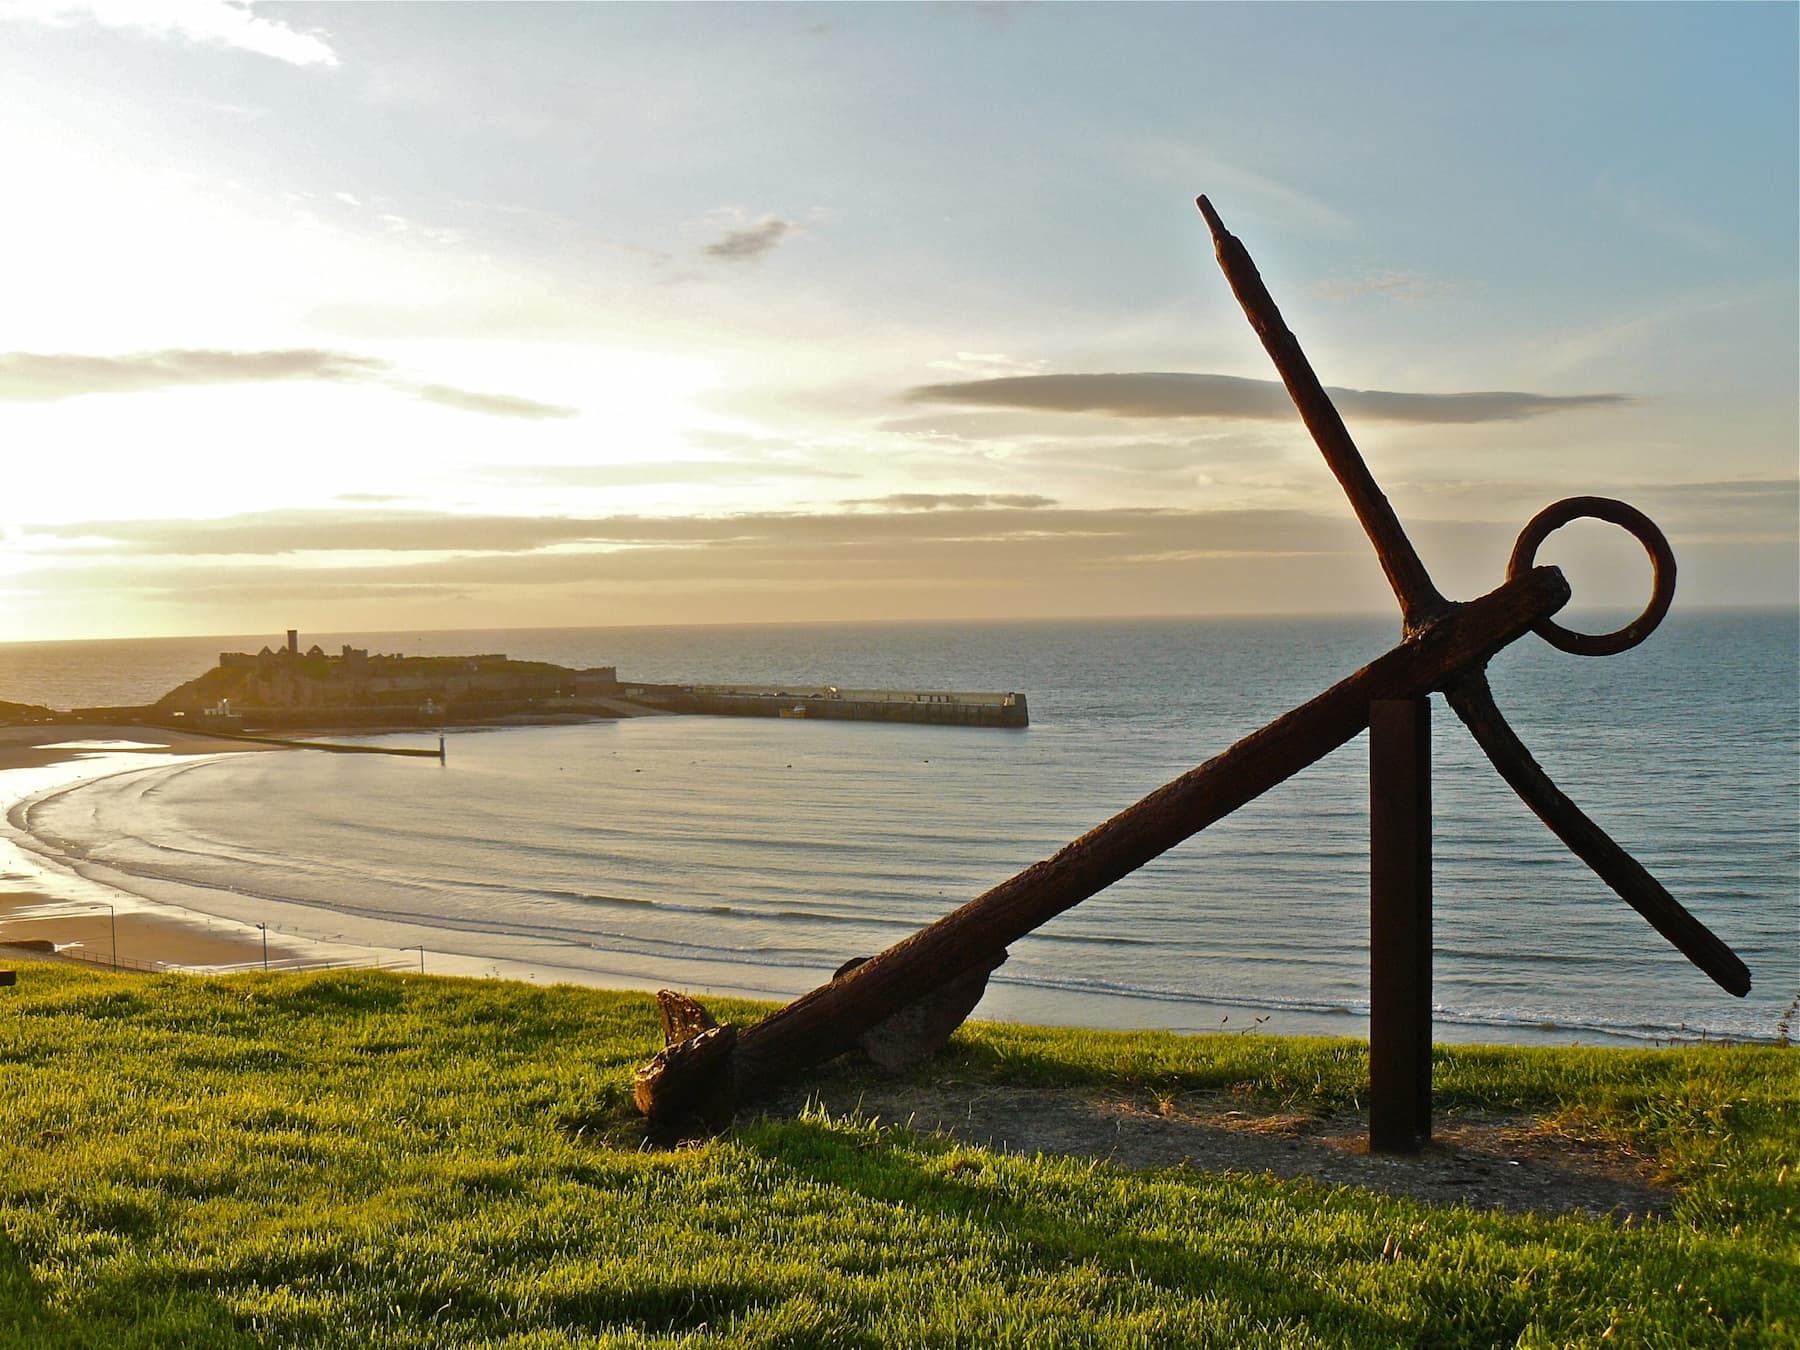 Isle of Man image